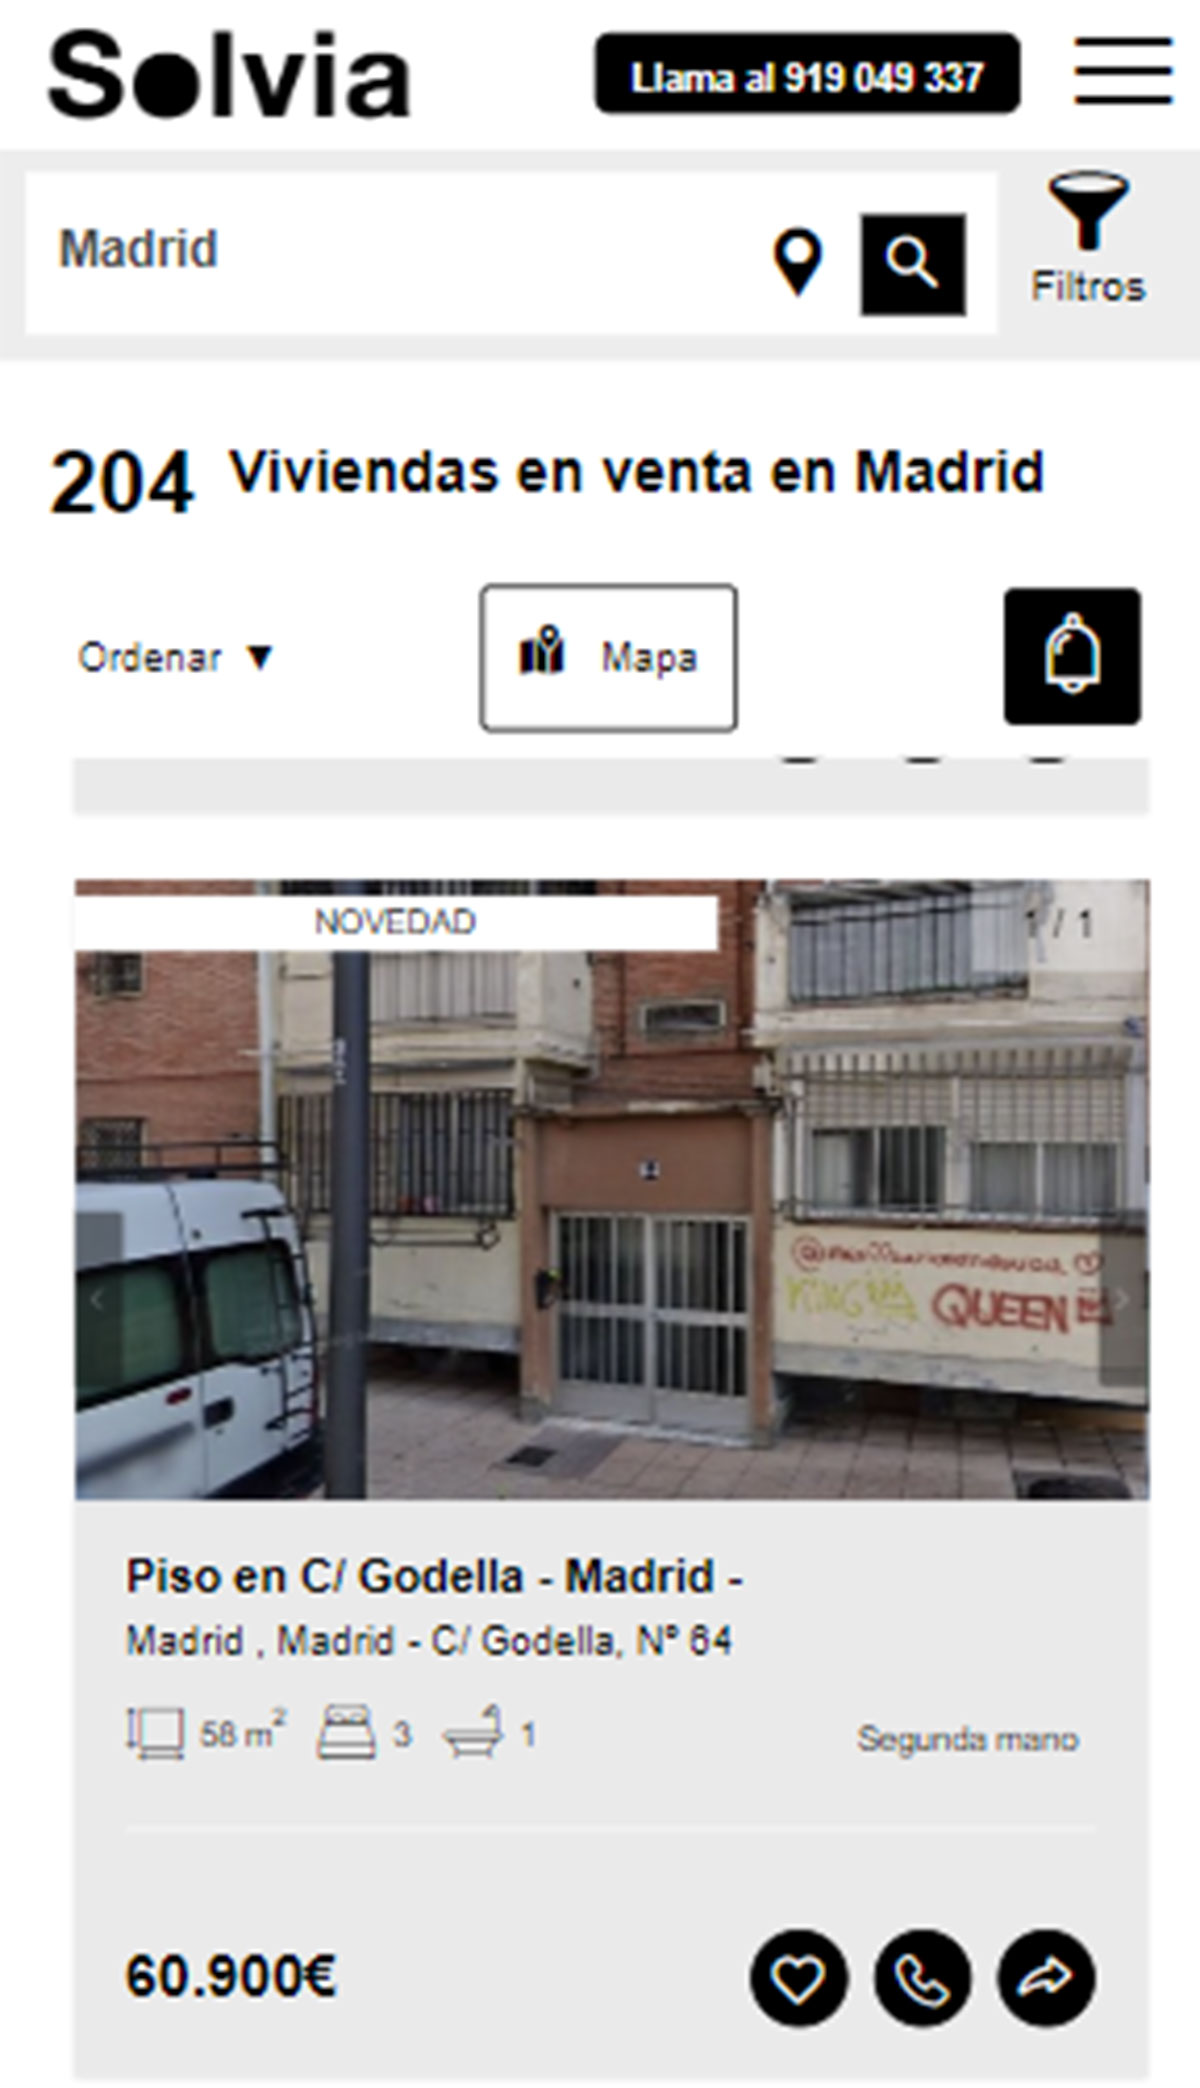 Piso en la ciudad de Madrid por 60.900 euros